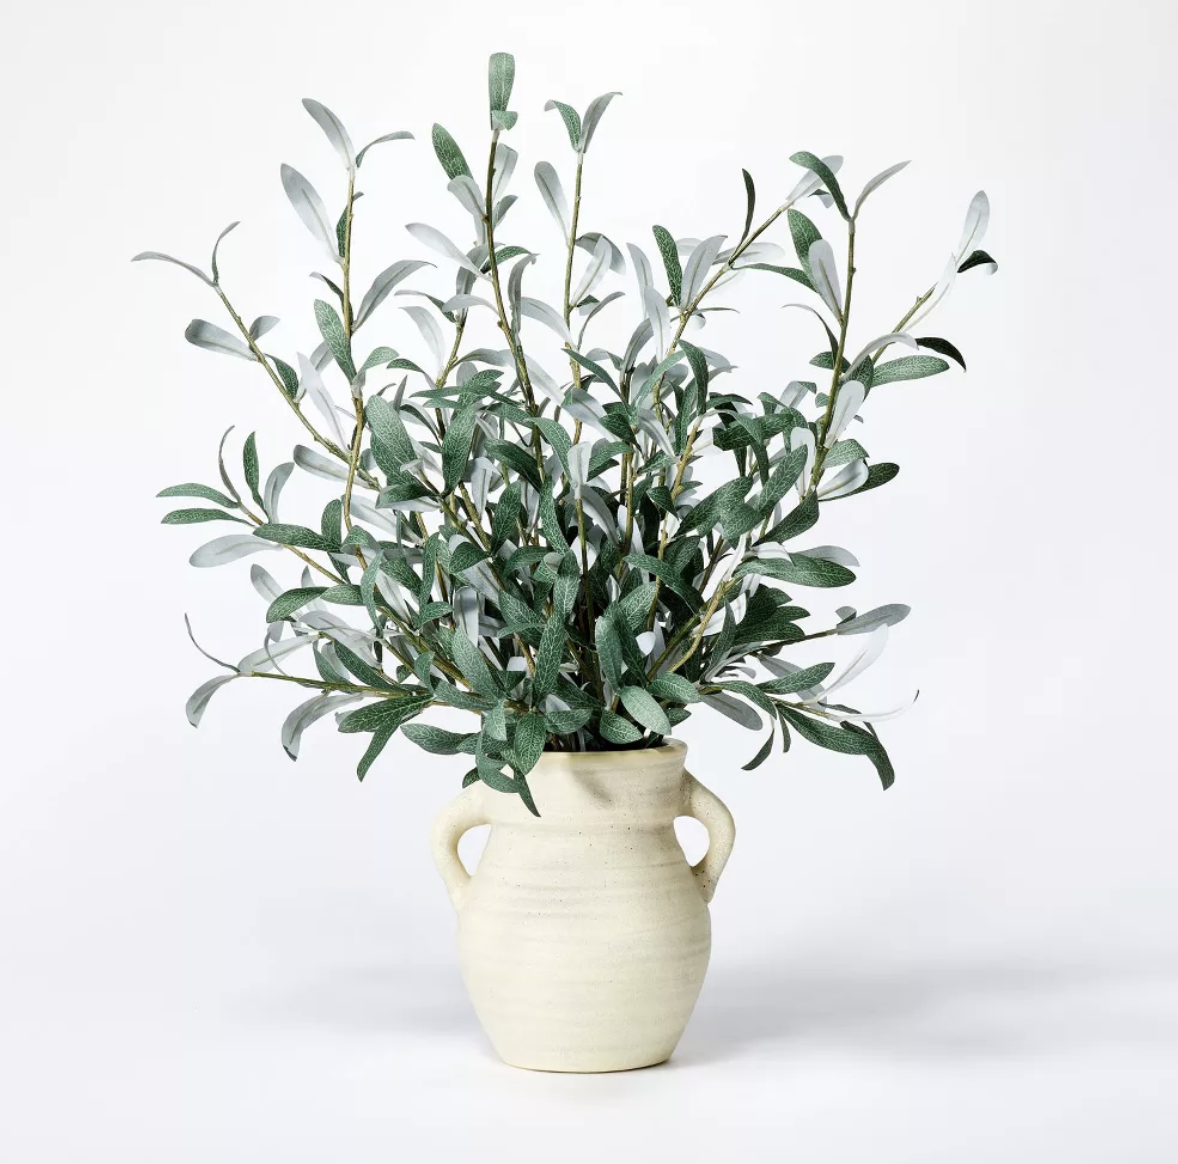 Target - $35 - Olive Leaf Arrangement